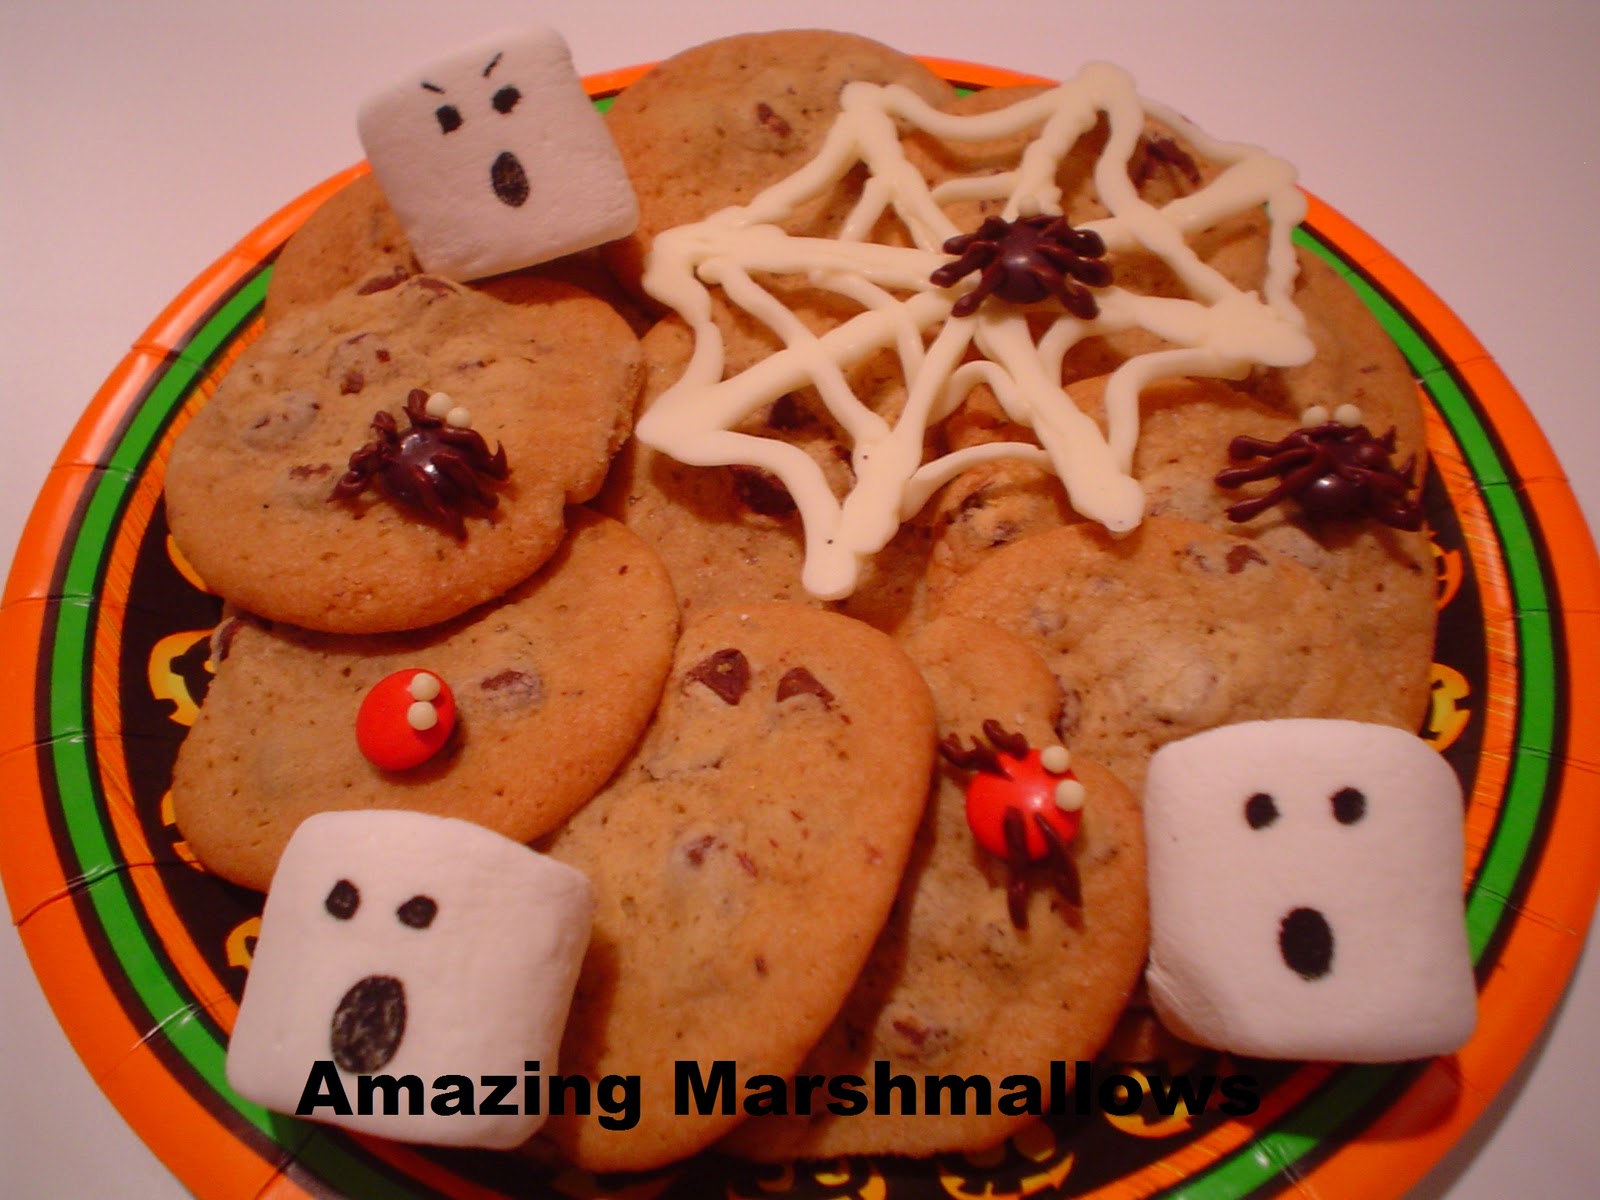 Amazing Marshmallows: Creepy treats with Marshmallows